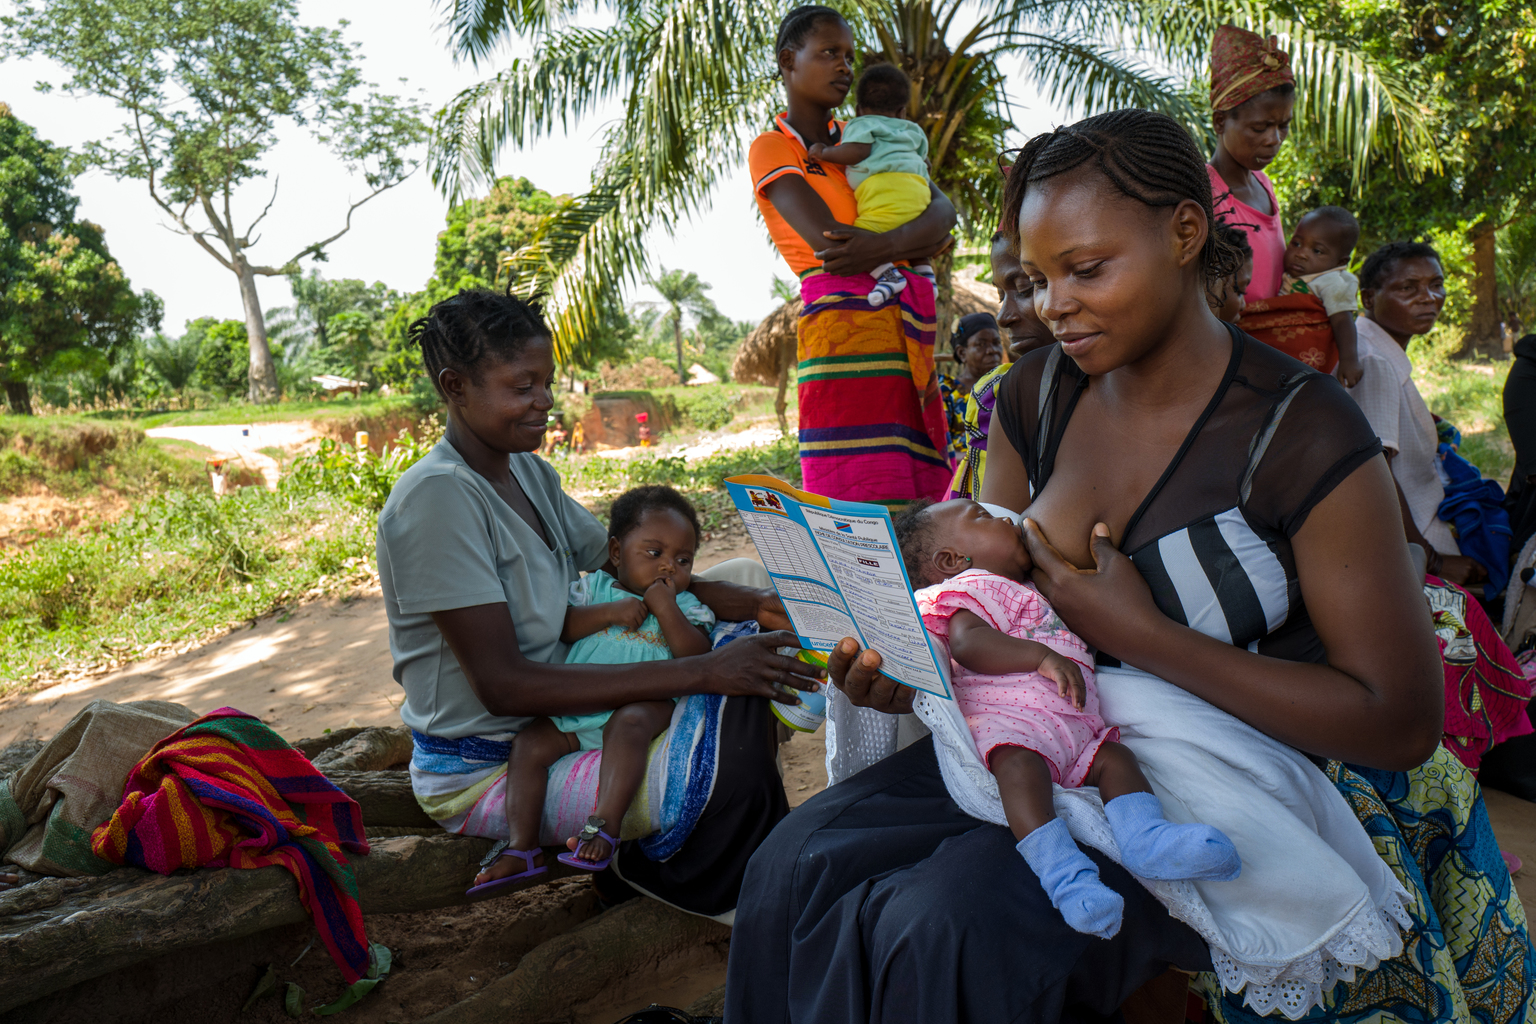 Le 20 mai 2017, une femme lit le carnet de santé de son enfant lors d'une session de vaccination de routine dans un quartier de Kabea Kamwanga, une petite ville située à 70 km au nord-ouest de Mbuji-mayi, en direction de Kananga, dans la province du Kasaï Orientale, au sud de la République démocratique du Congo, une région en proie aux conflits entre les miliciens du chef traditionnel Kamuina Nsapu et les Forces Armées de la République démocratique du Congo (FARDC) depuis juin 2016. / On May 20th, 2017, a woman is reading the health record of her child during a routine immunization session in a neighborhood of Kabea Kamwanga, a small town located 70 km north-west of Mbuji-mayi, in the direction of Kananga, in the province of Kasai Orientale, in the south Of the Democratic Republic of the Congo, a region plagued by conflict between the militia of the traditional leader Kamuina Nsapu and the Armed Forces of the Democratic Republic of the Congo (FARDC) since June 2016. In August 2016, fighting broke out in one of the Democratic Republic of Congos (DRC) poorest regions - Kasai - after a traditional leader was killed in clashes with security forces. The situation deteriorated in 2017, unleashing a wave of violence that has now engulfed nine of the countrys 26 provinces.